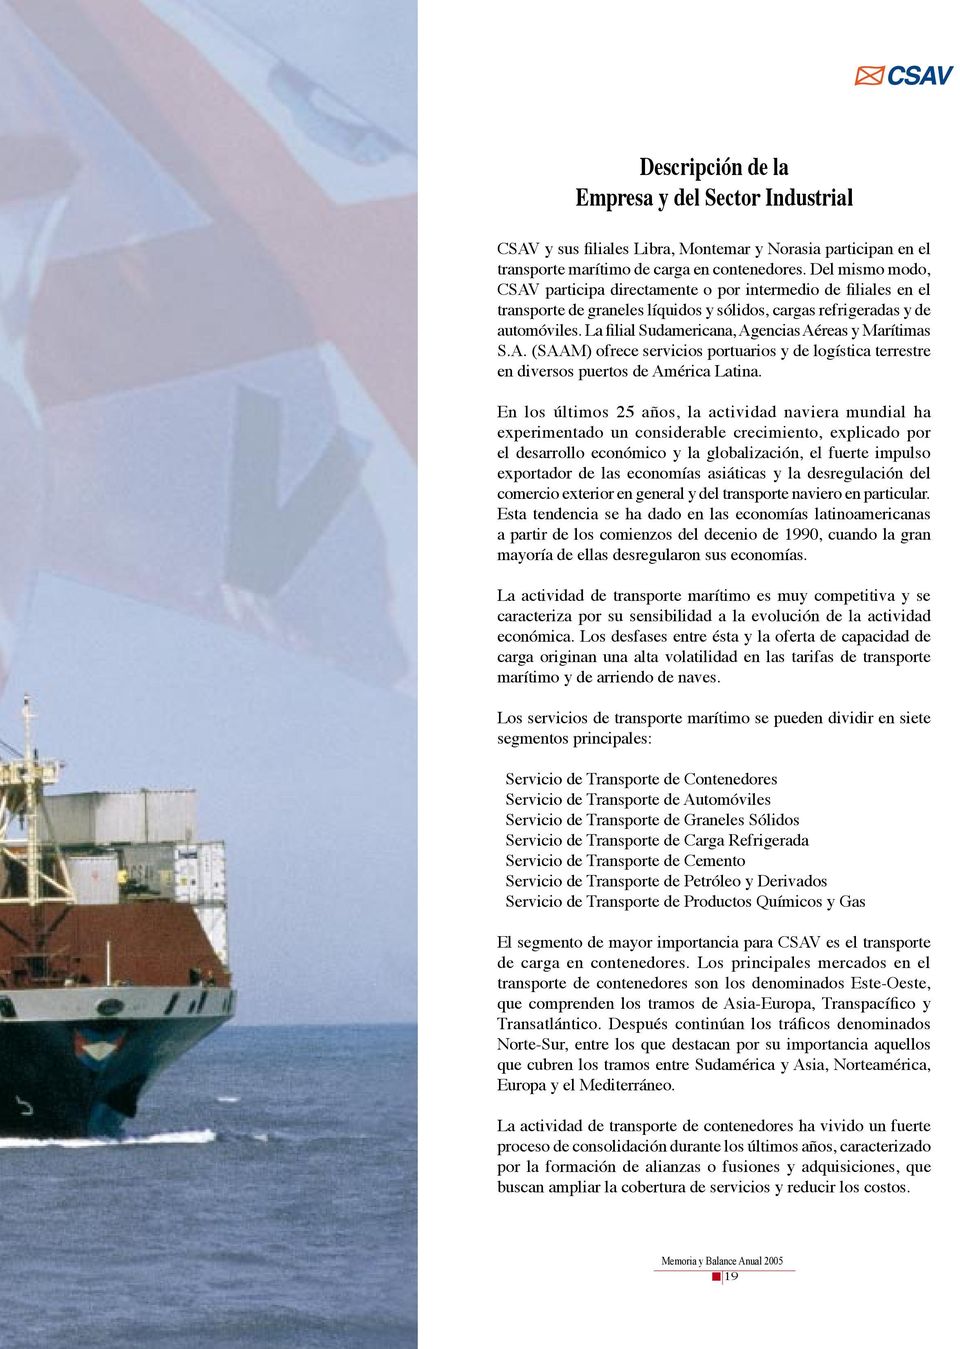 La filial Sudamericana, Agencias Aéreas y Marítimas S.A. (SAAM) ofrece servicios portuarios y de logística terrestre en diversos puertos de América Latina.